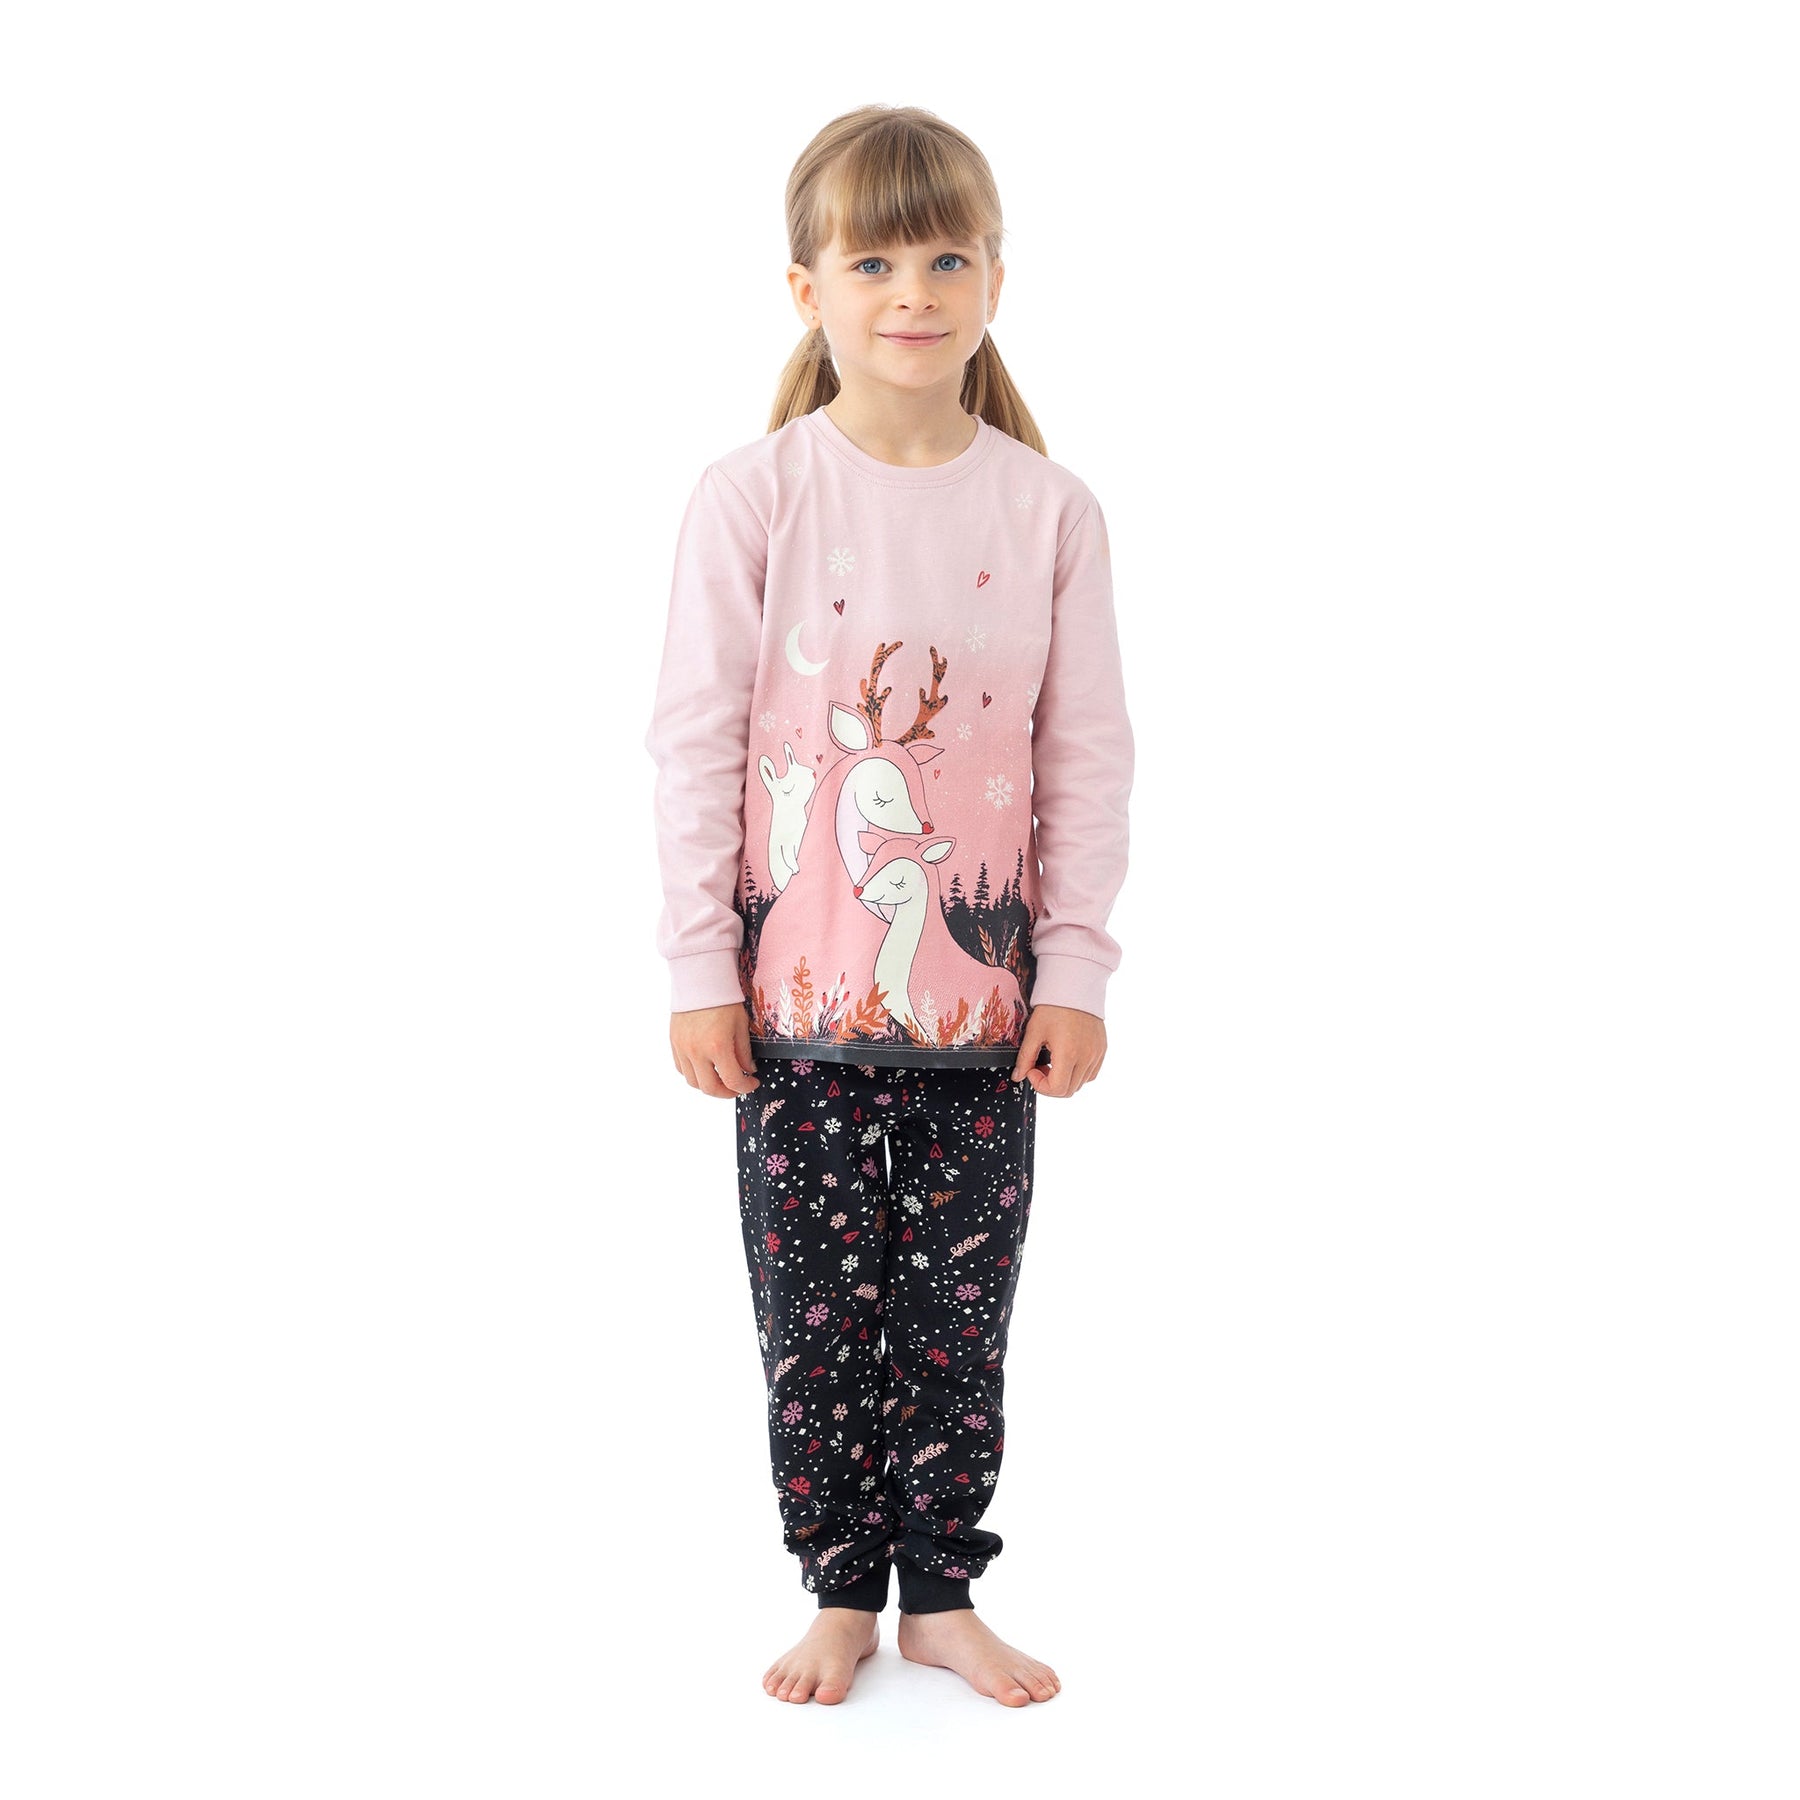 Pyjama deux-pièces pour enfant fille par Nanö | F22P58 Rose | Boutique Flos, vêtements mode pour bébés et enfants